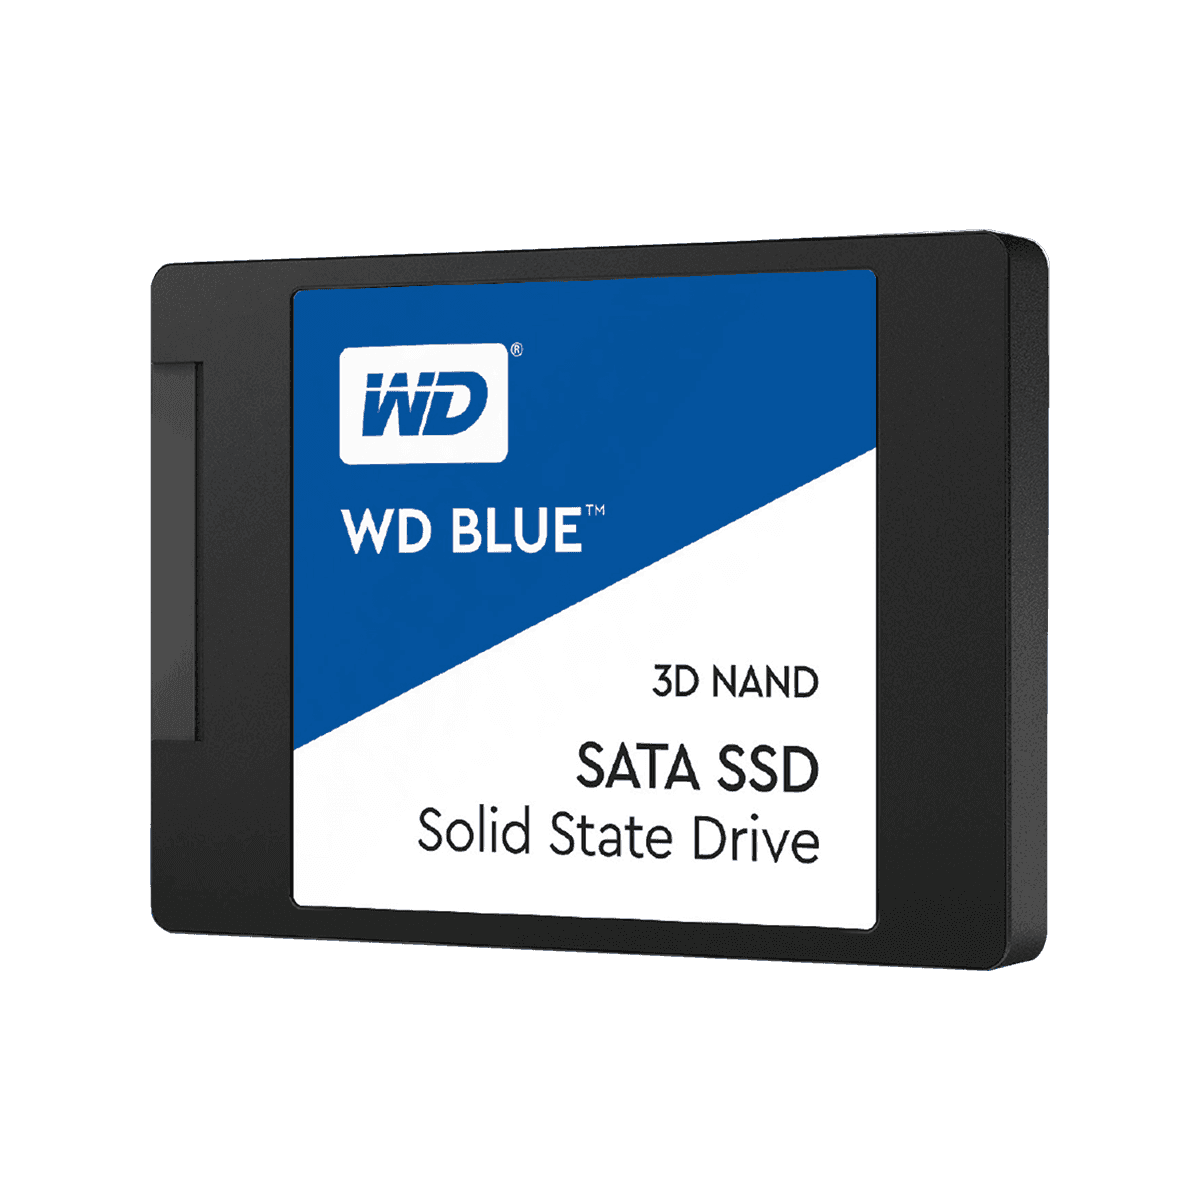 【販売終了】WesternDigital製 WD BLUEシリーズ 3DNAND採用SSD 4TB WDS400T2B0A